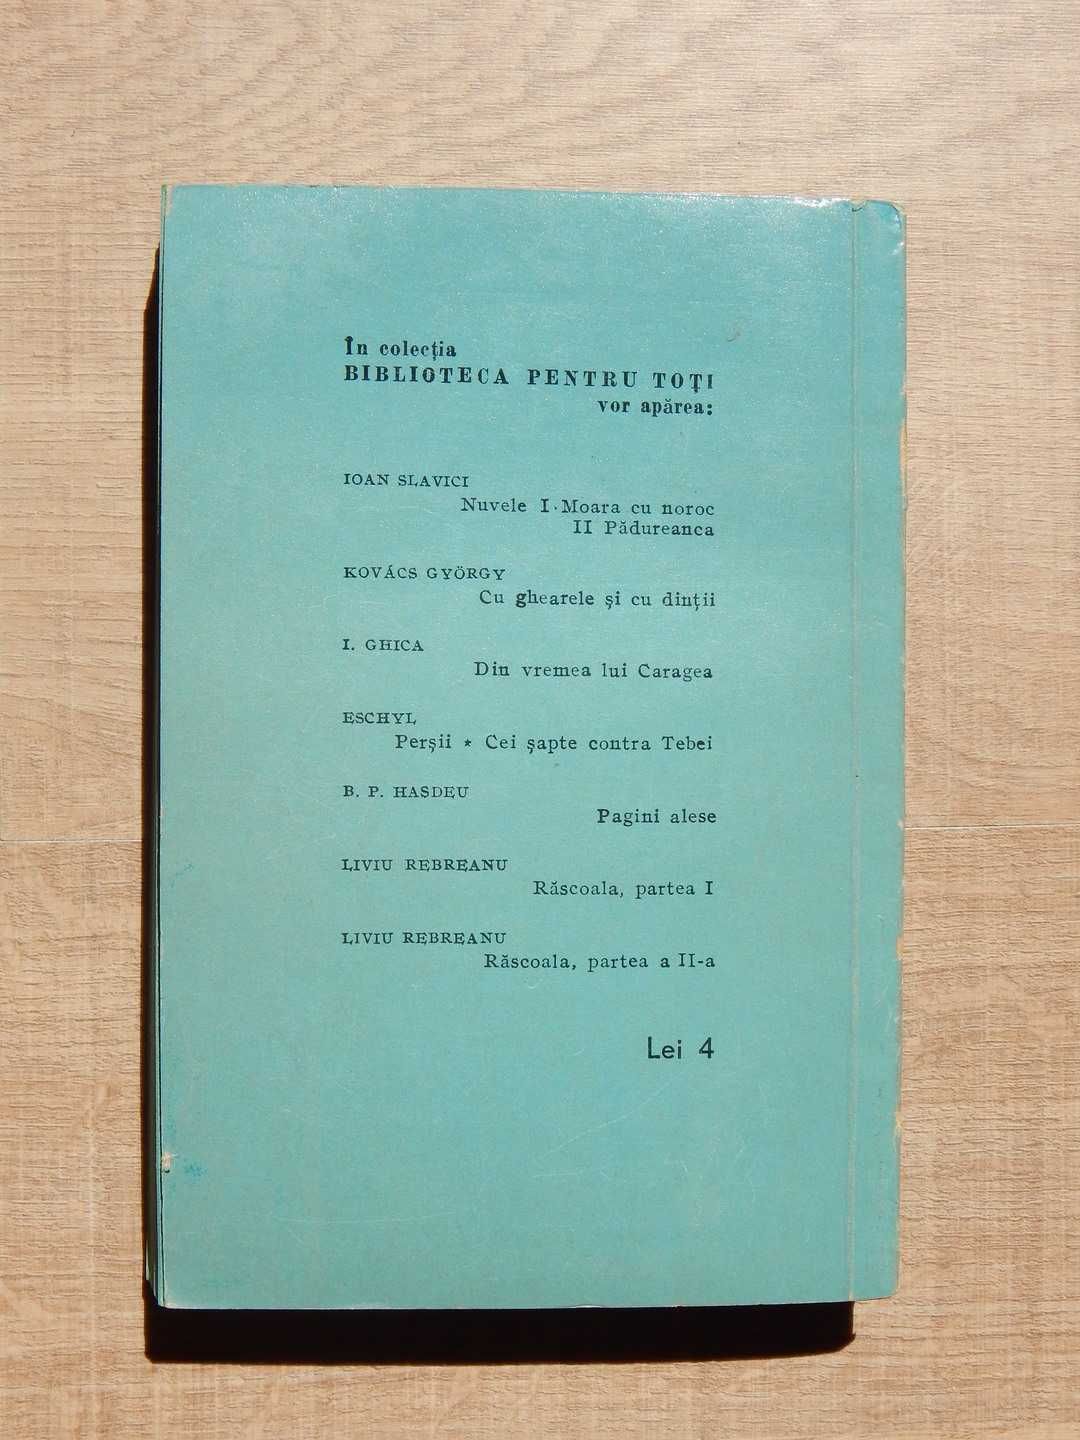 Bulgare de seu Guy de Maupassant BPT Editura de Stat Literatura 1960